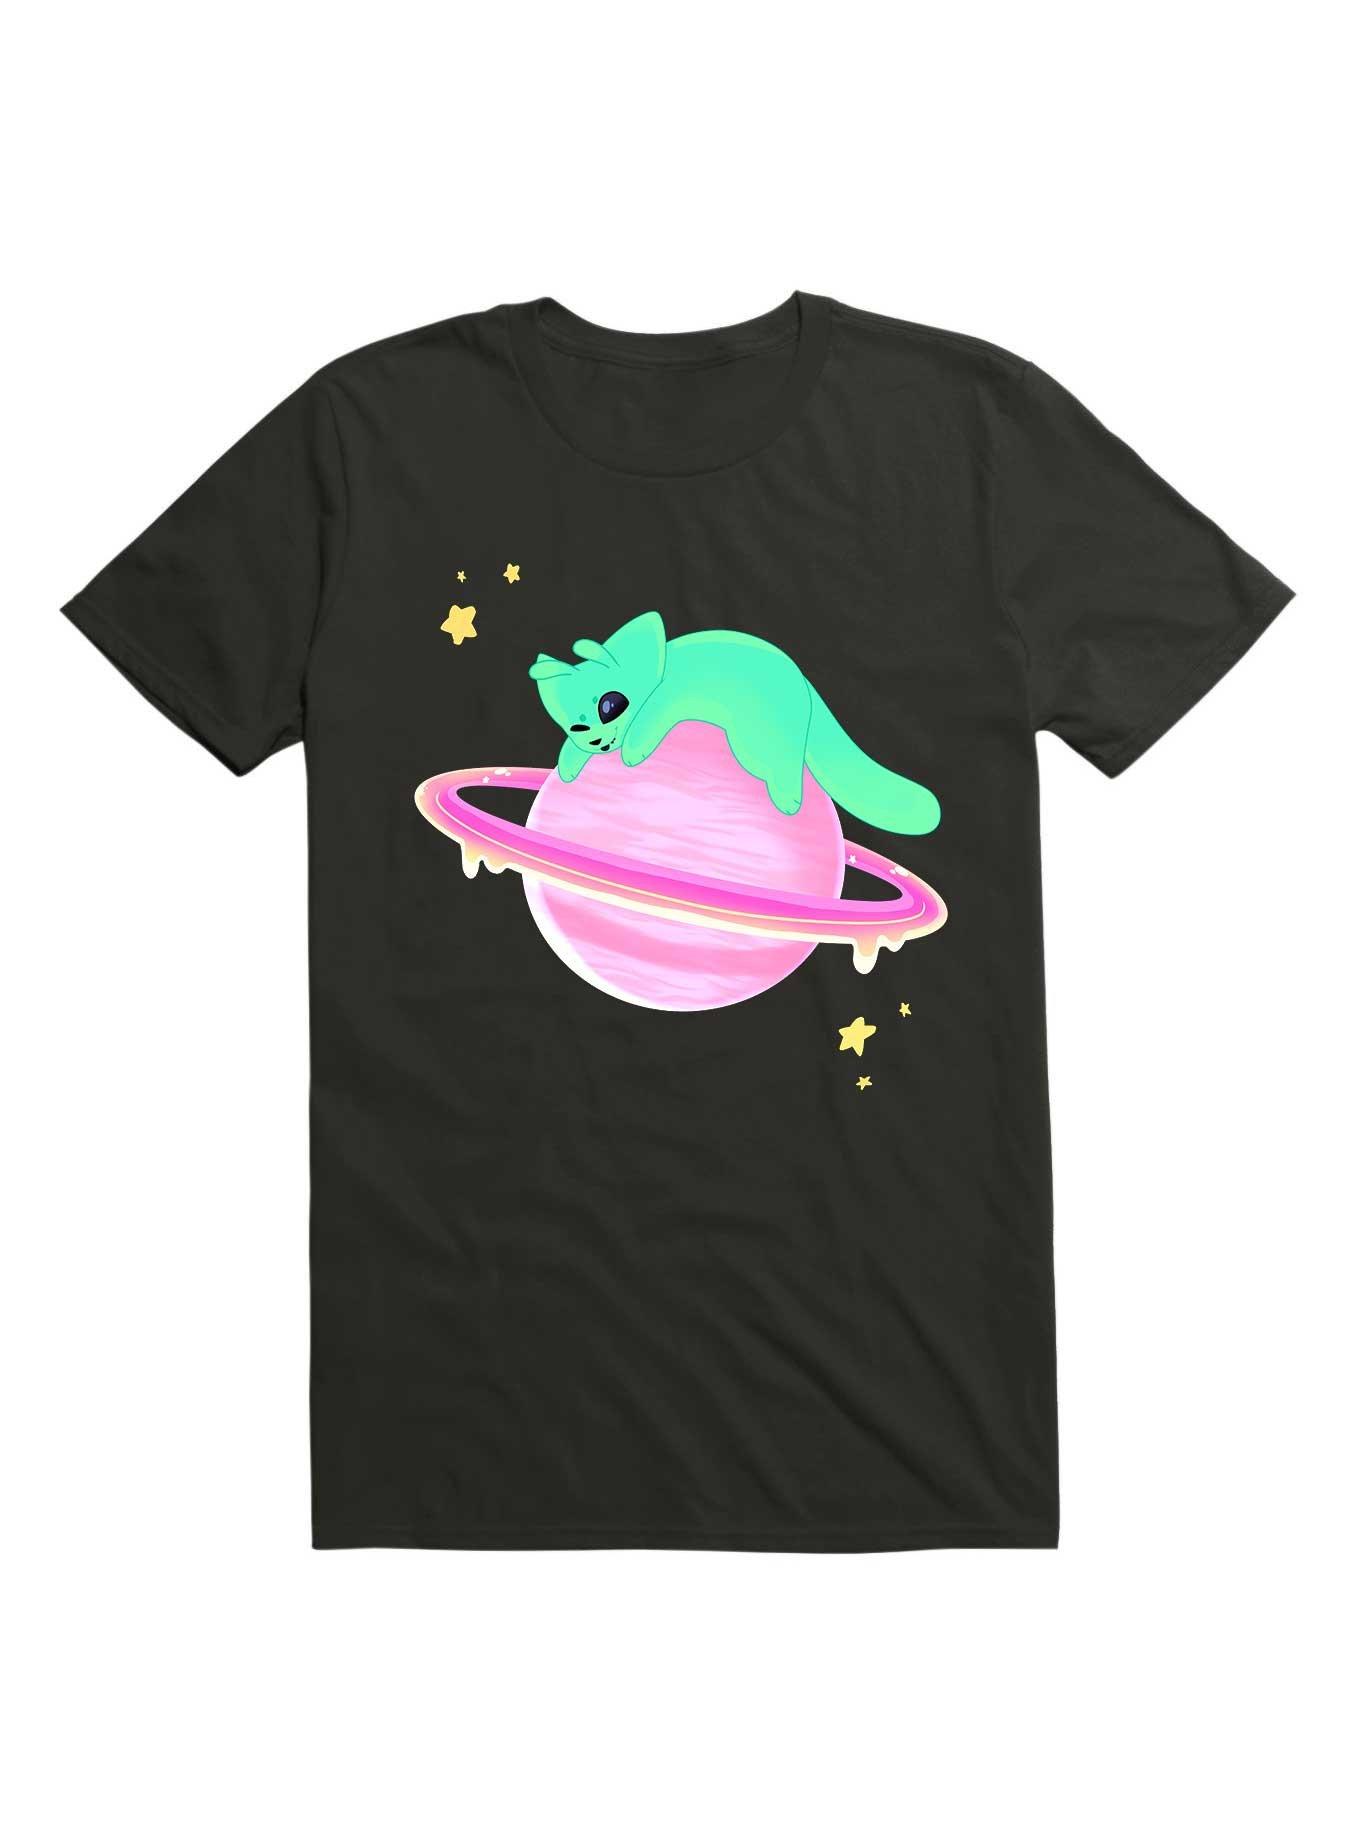 Kawaii Cat Alien On A Planet T-Shirt